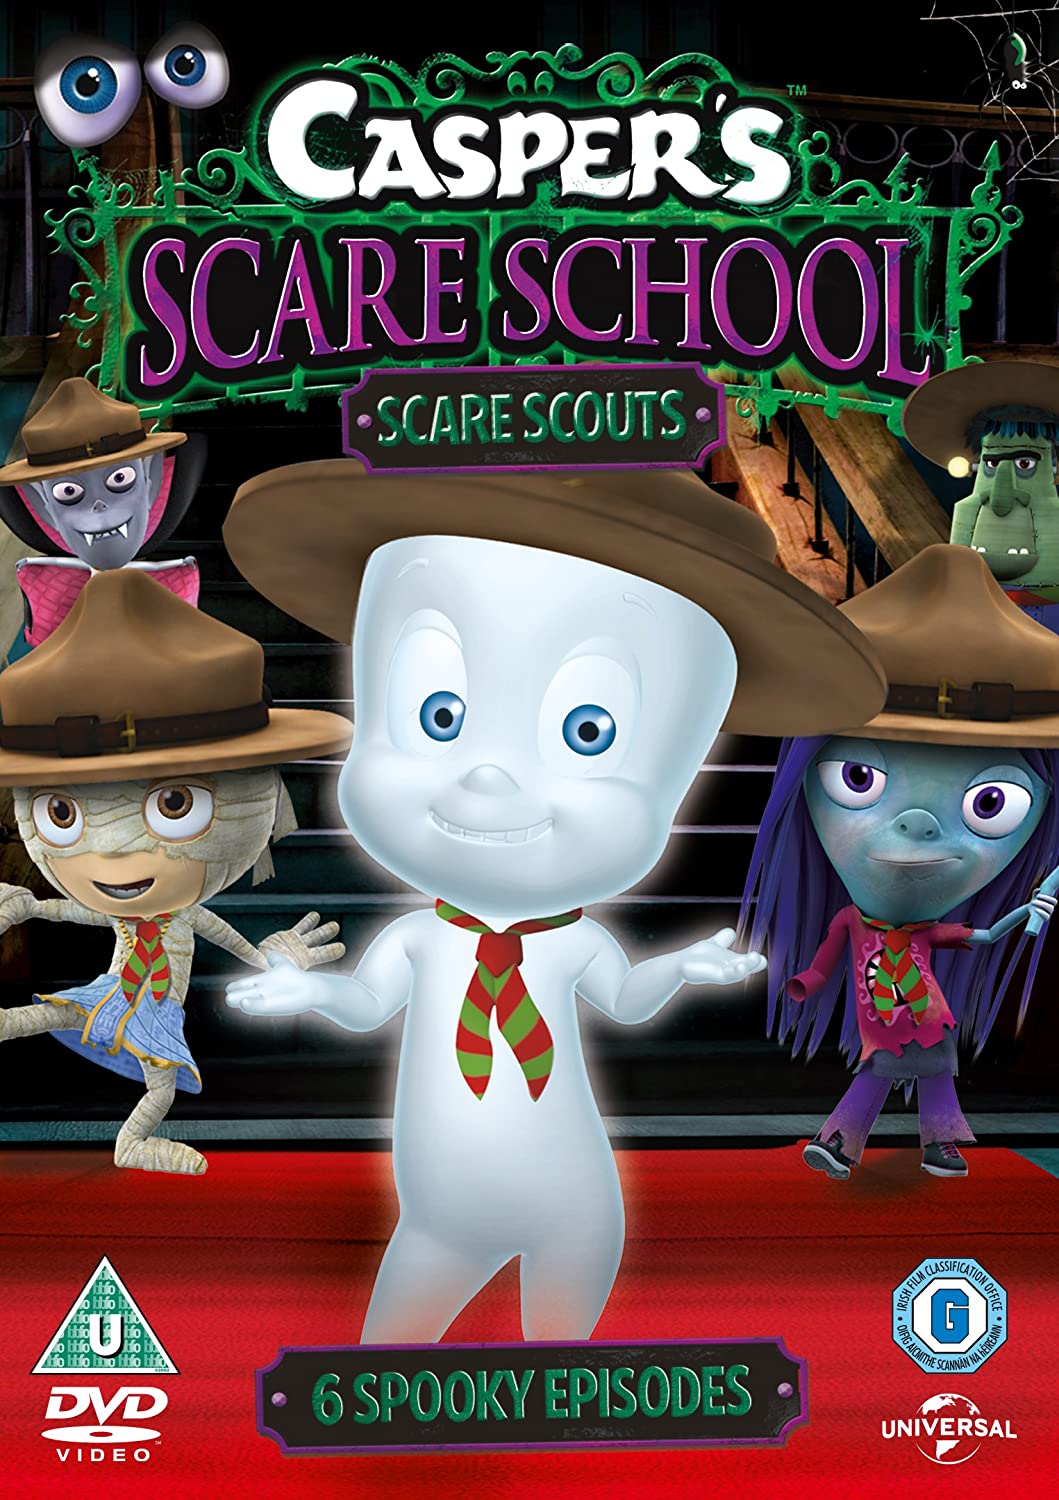 Casper's Scare School: Scare Scouts - Animation [DVD]